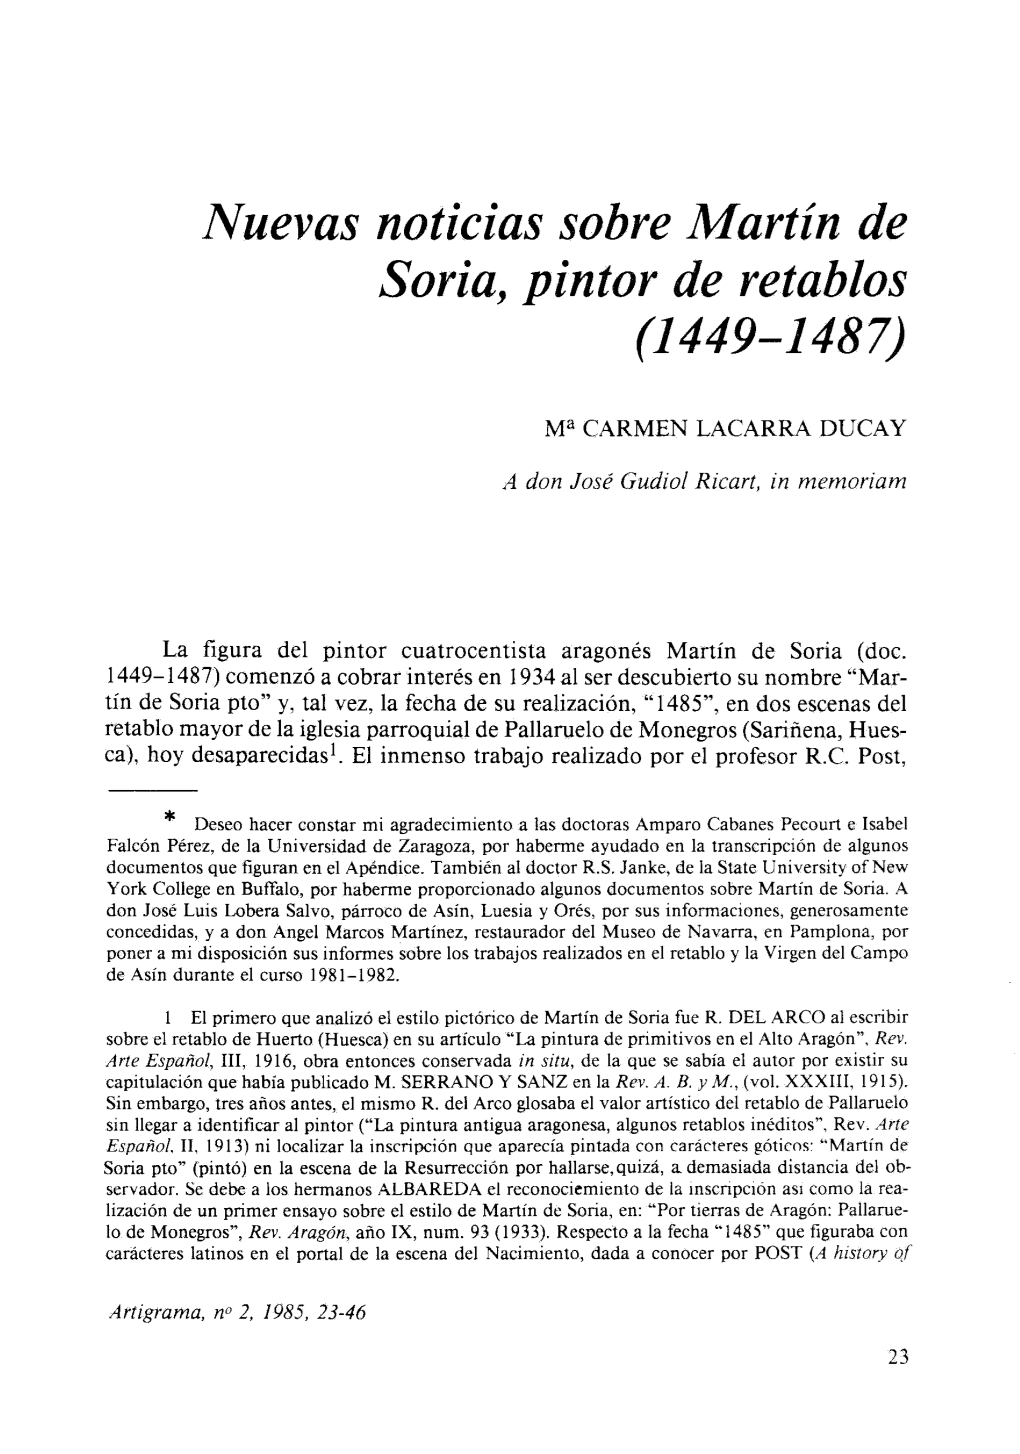 Iyuevas Noticias Sobre Martín De Soria, Pintor De Retablos (144E-1487)